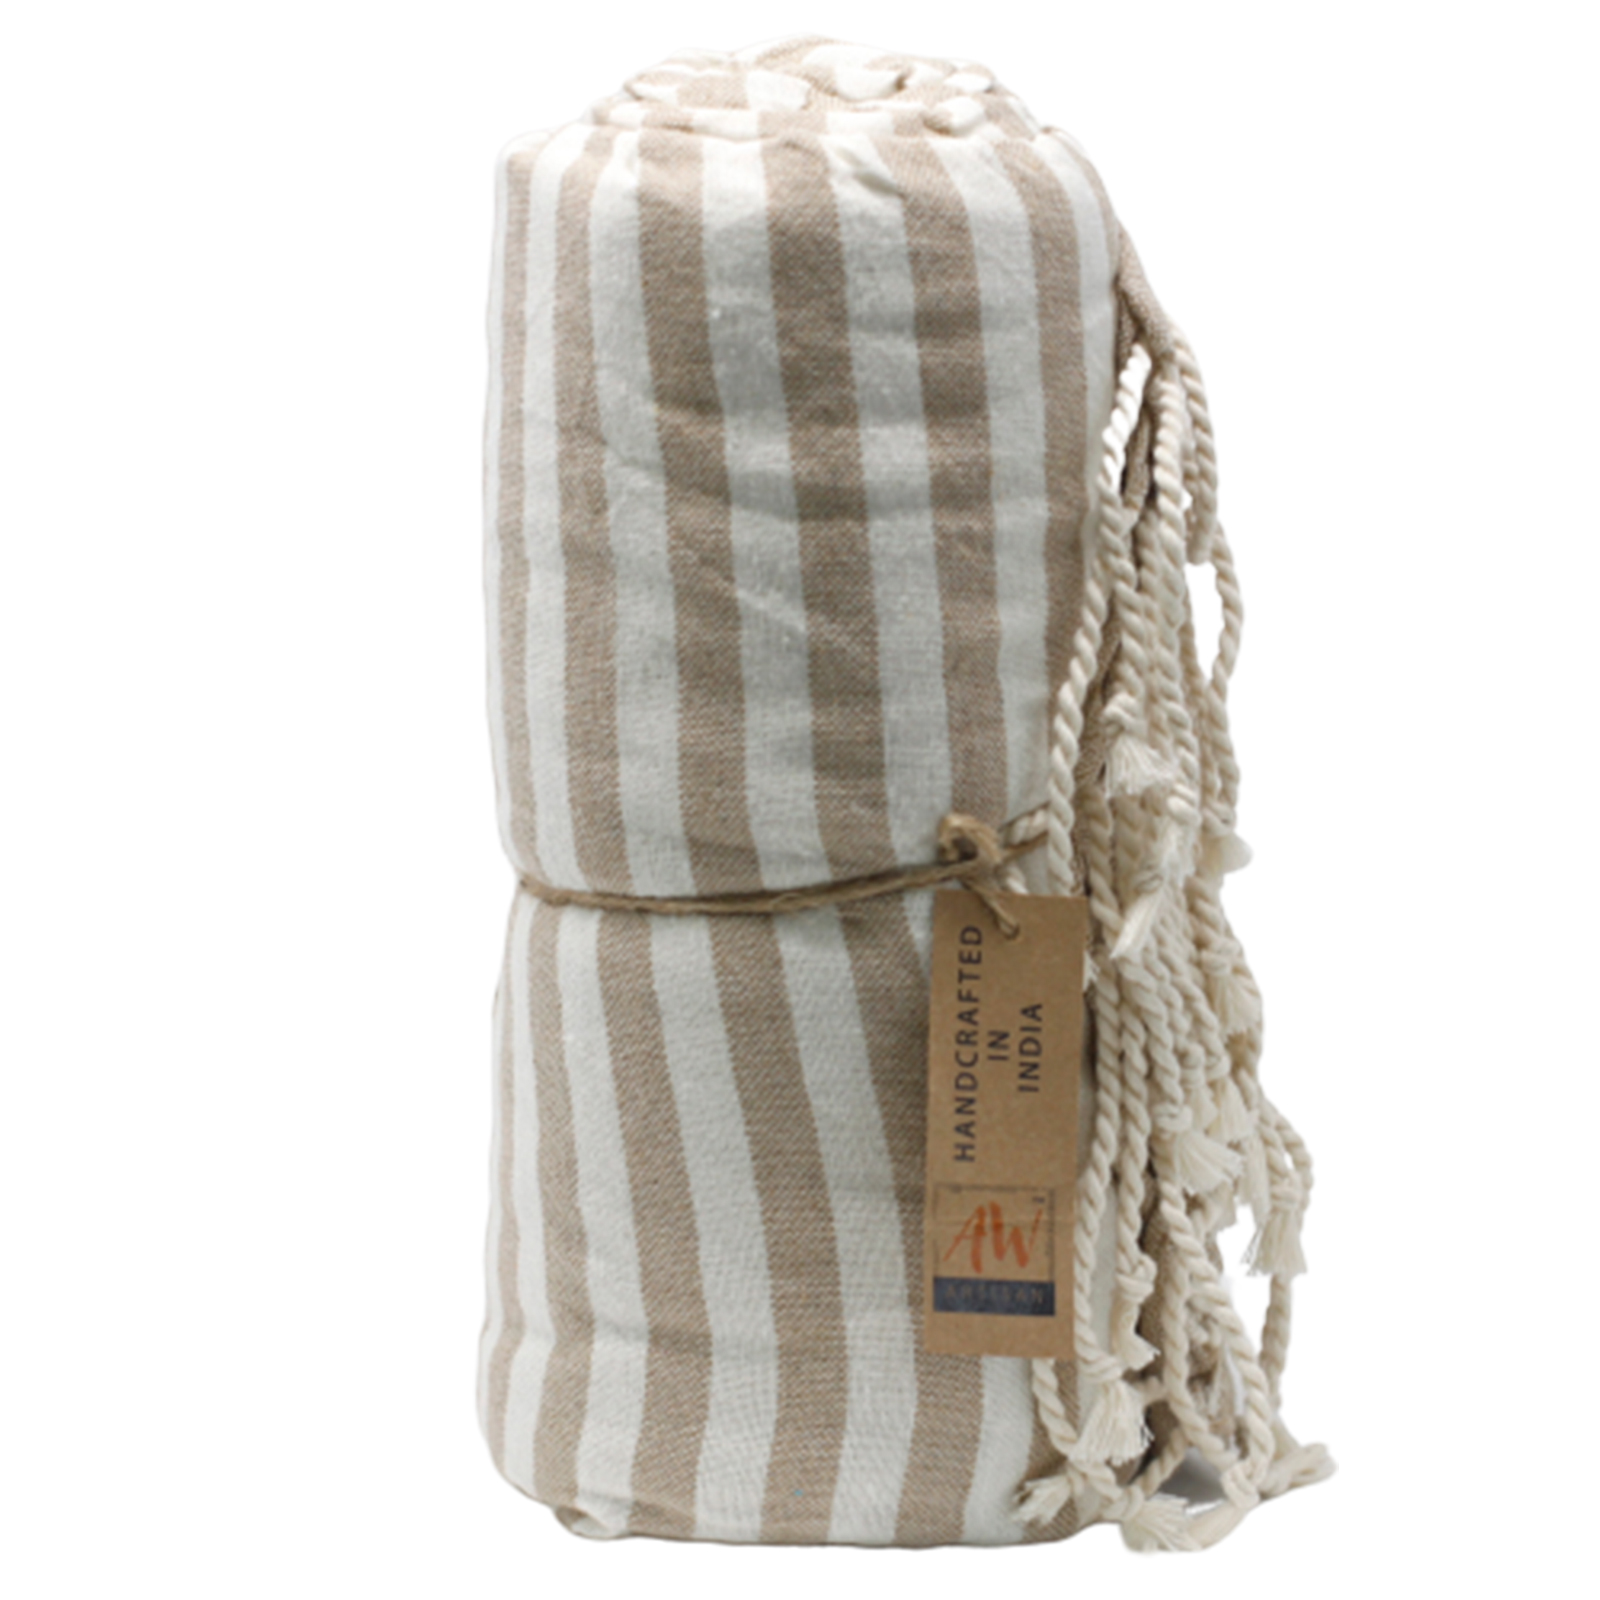 Cotton Pario Towel - 100x180 cm - Warm Sand